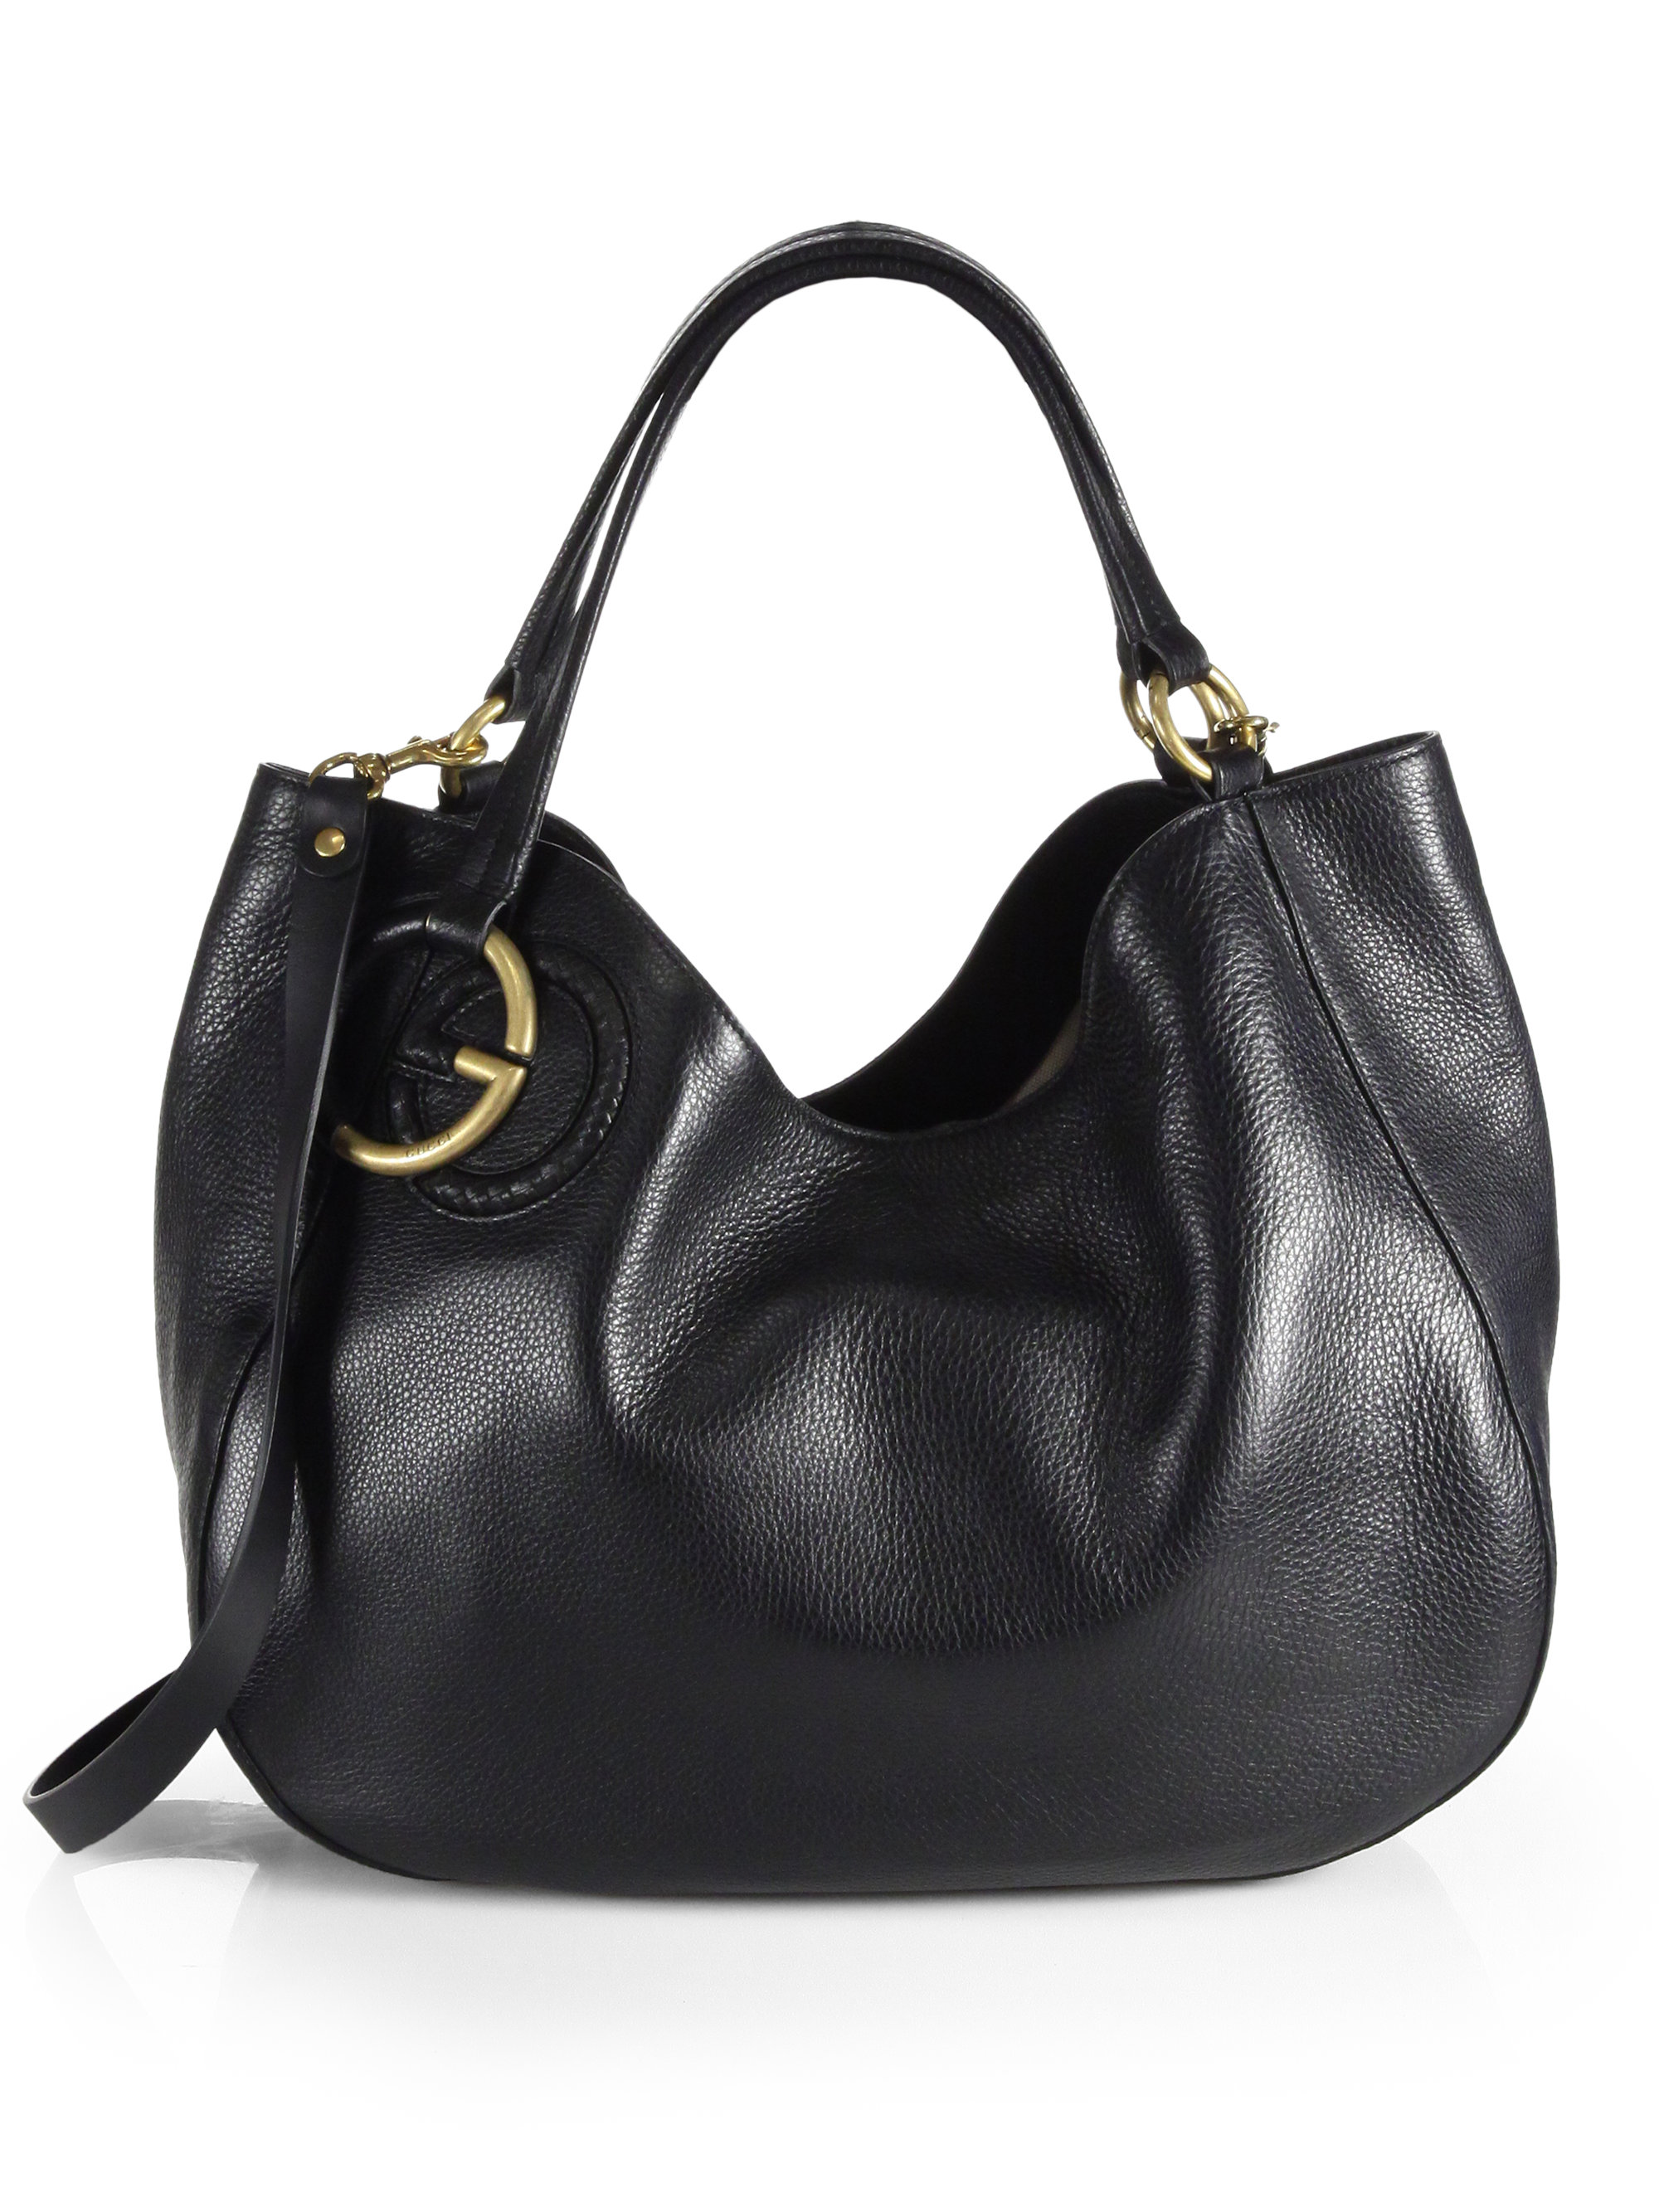 Gucci Twill Leather Medium Shoulder Bag in Black - Lyst